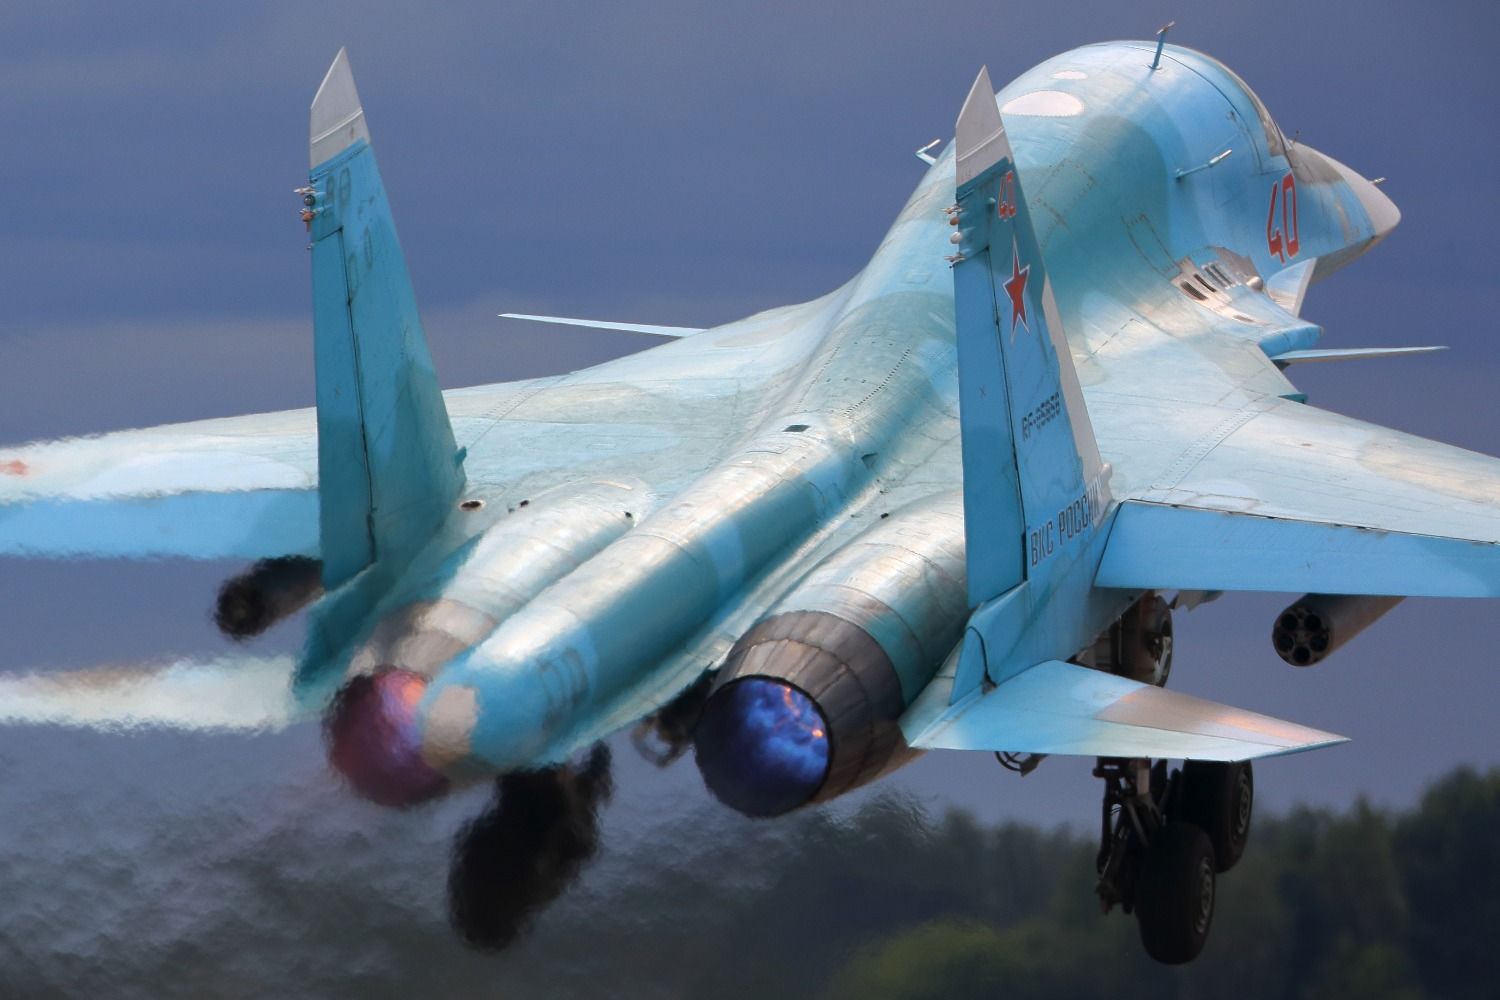 После срыва Путина на военном аэродроме в Ейске произошла мощная "бавовна" - реакция россиян